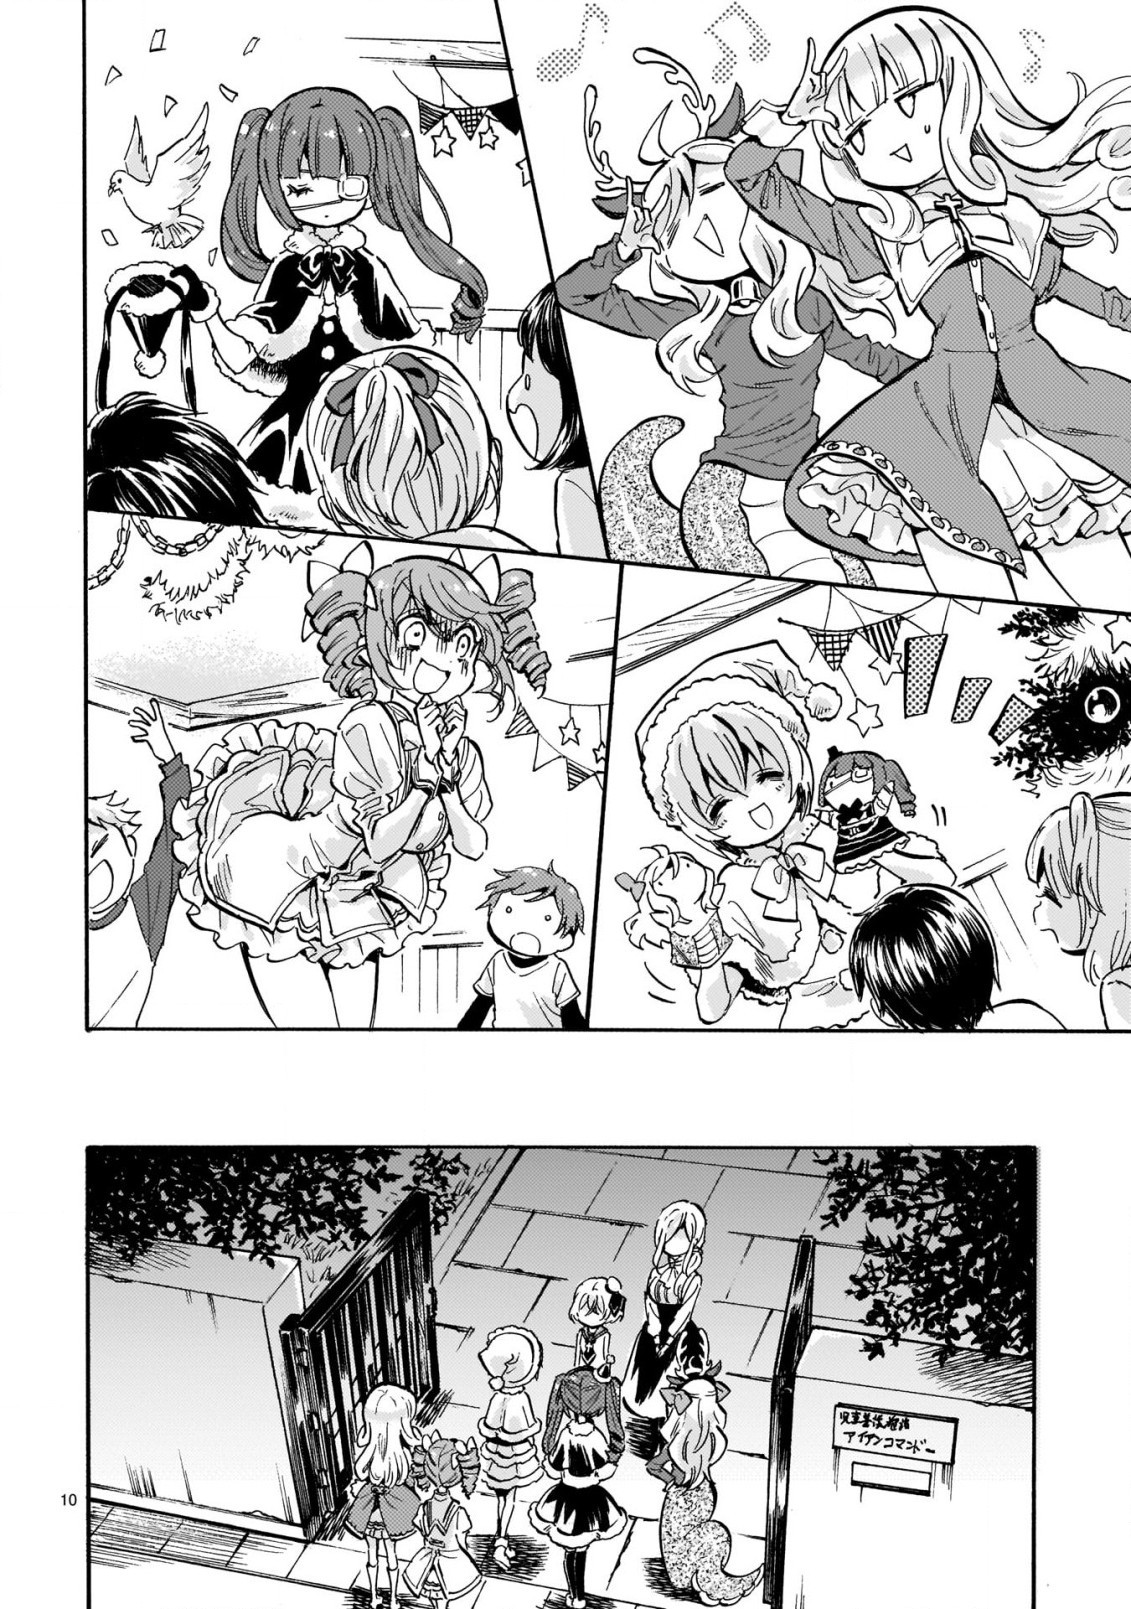 Jashin-chan Dropkick - Chapter 205 - Page 10